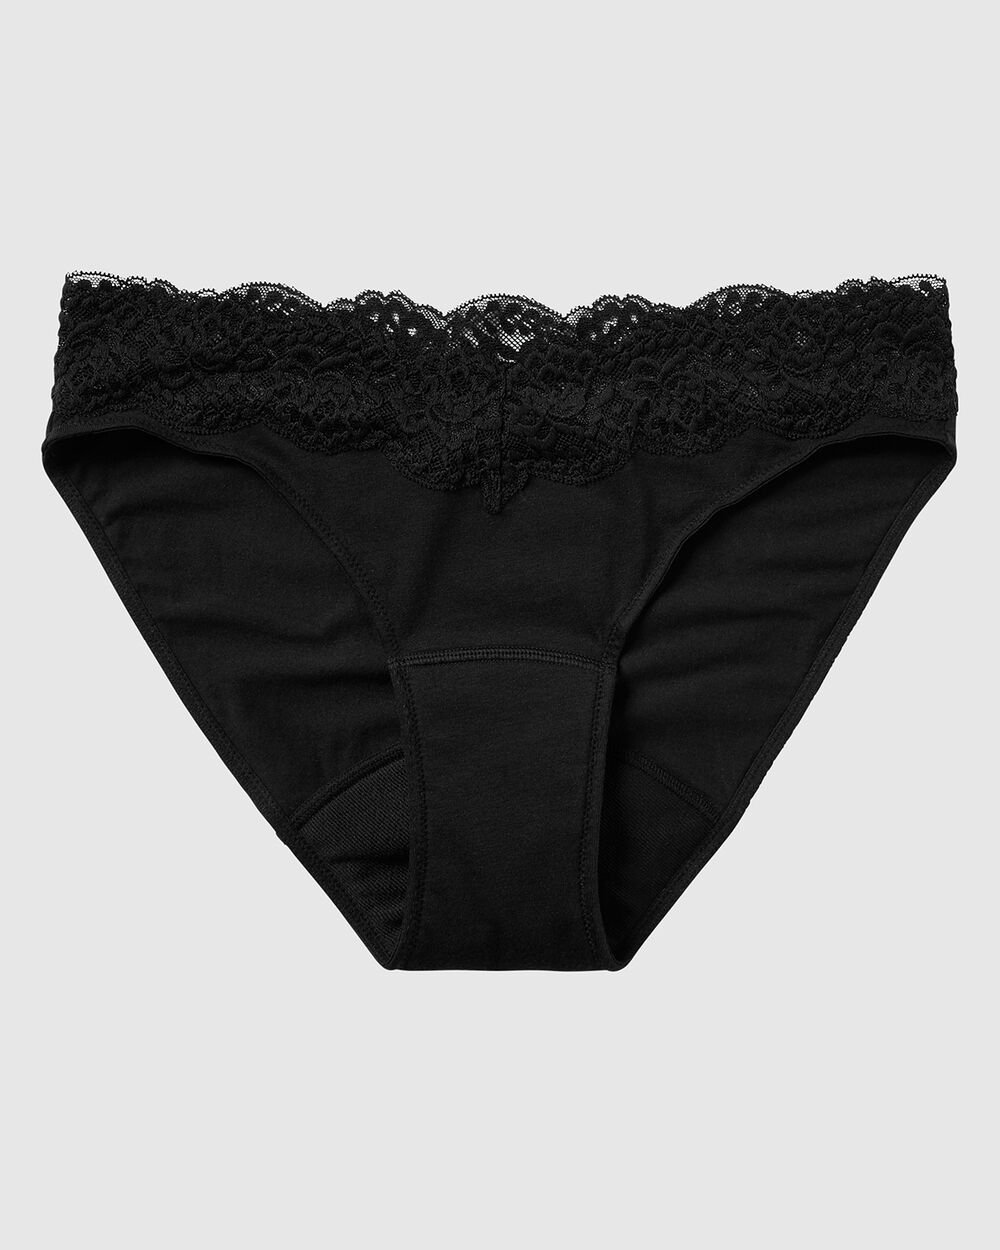 Lace Bikini Panty - Black